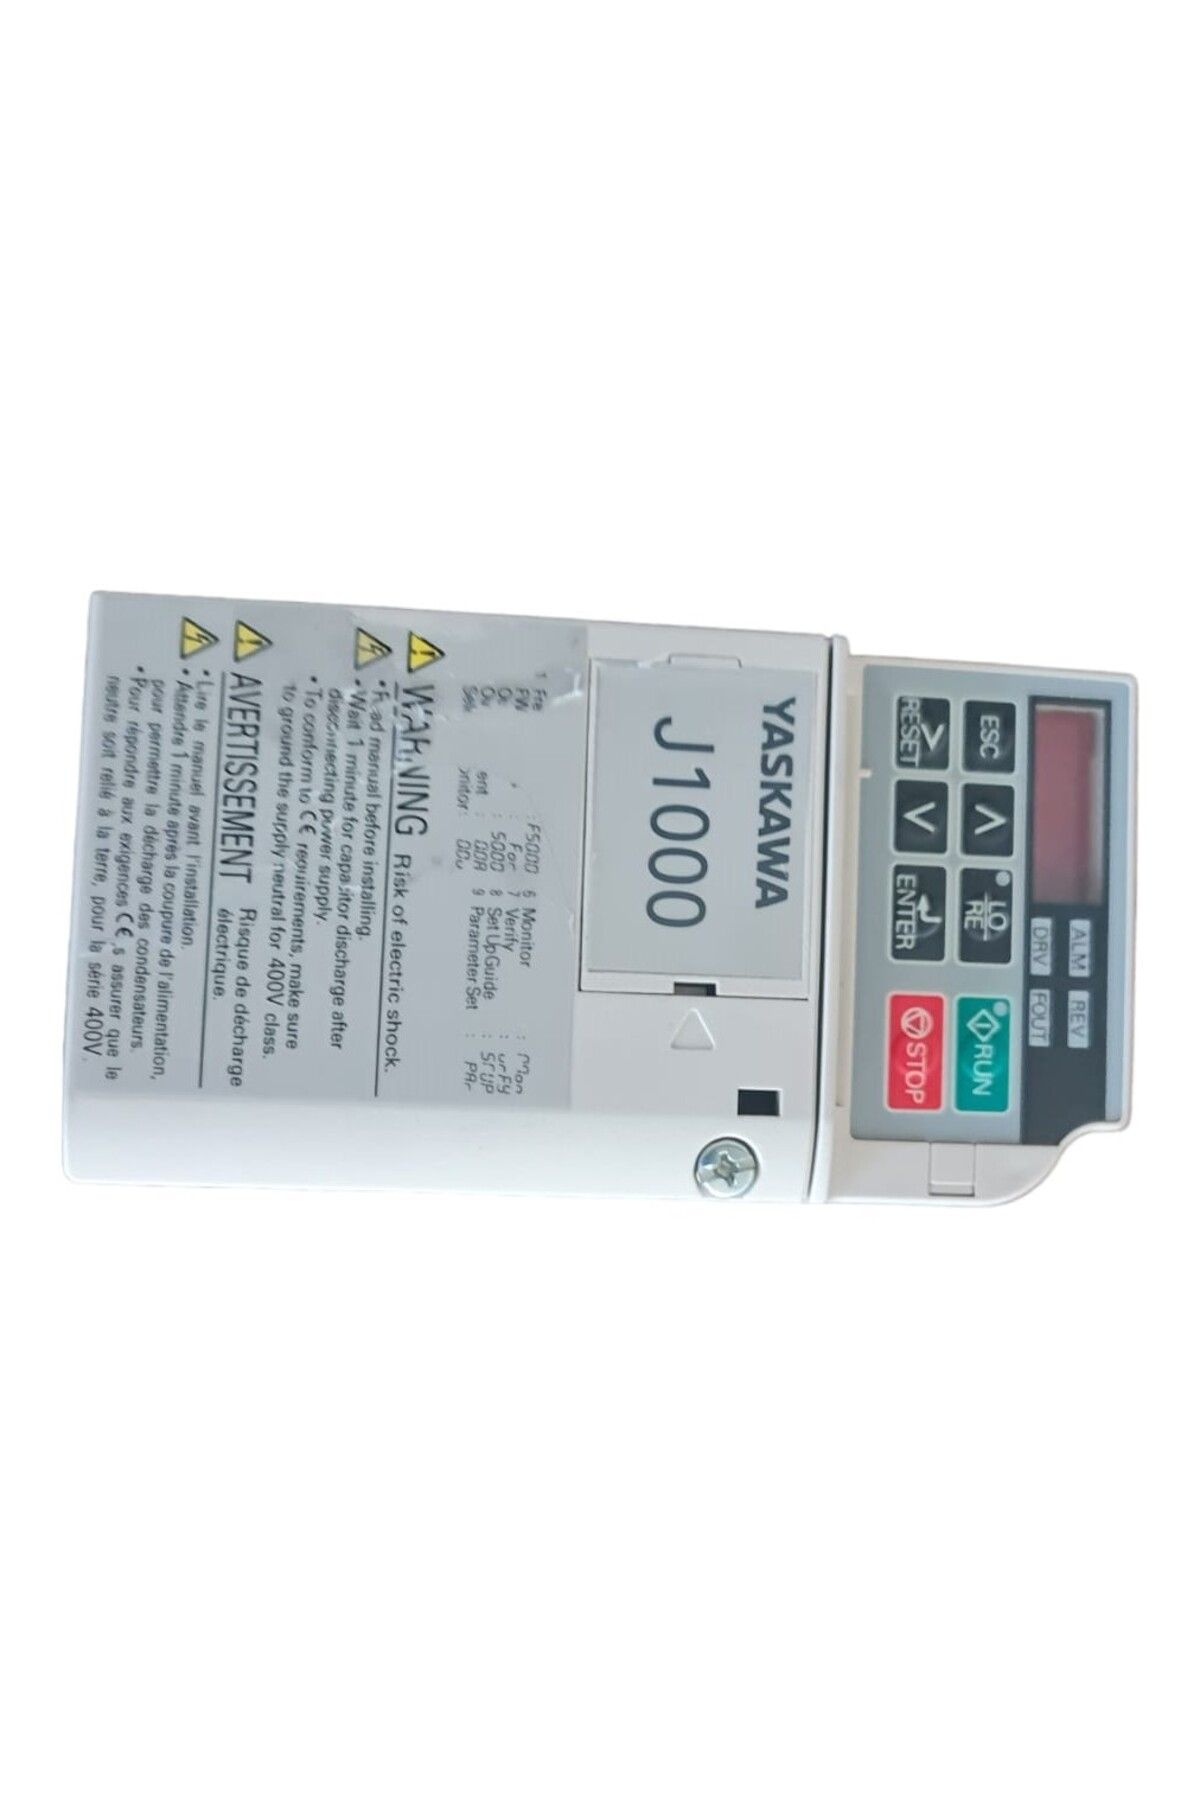 YASKAWA CIMR-JC2A0006BAA Elektronik PLC